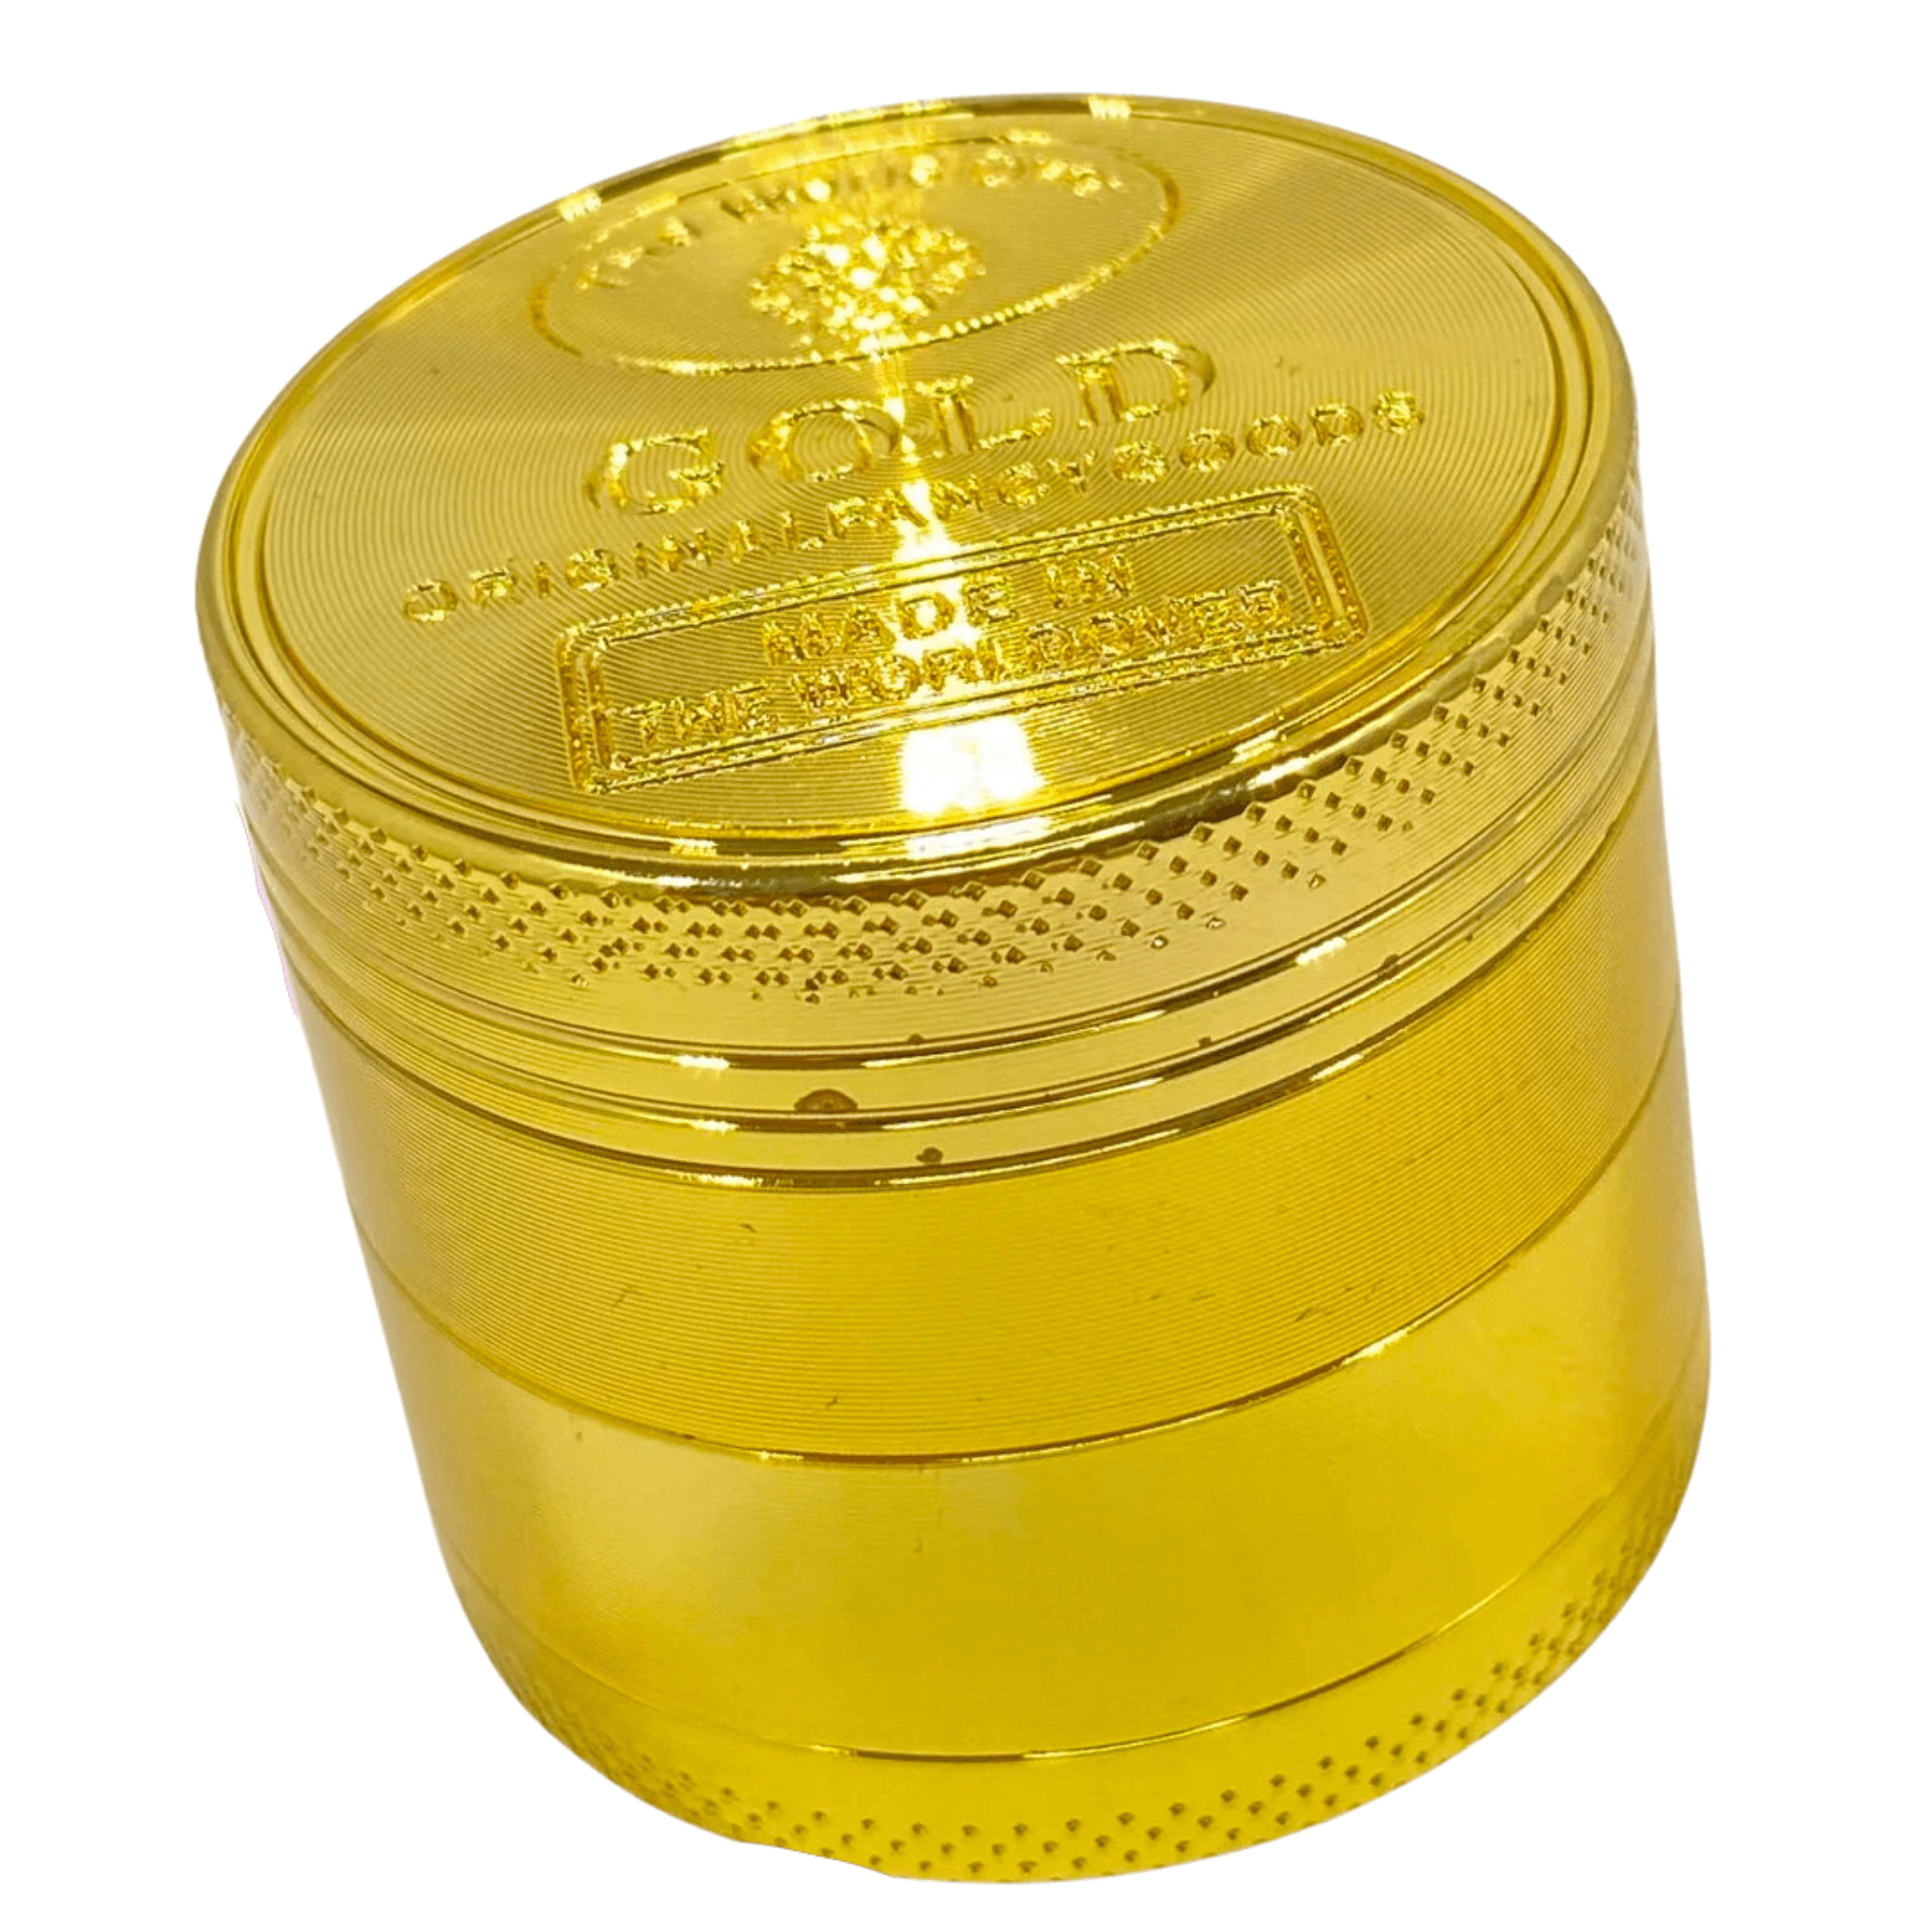 Gold herb Grinder - Cyberpuffs